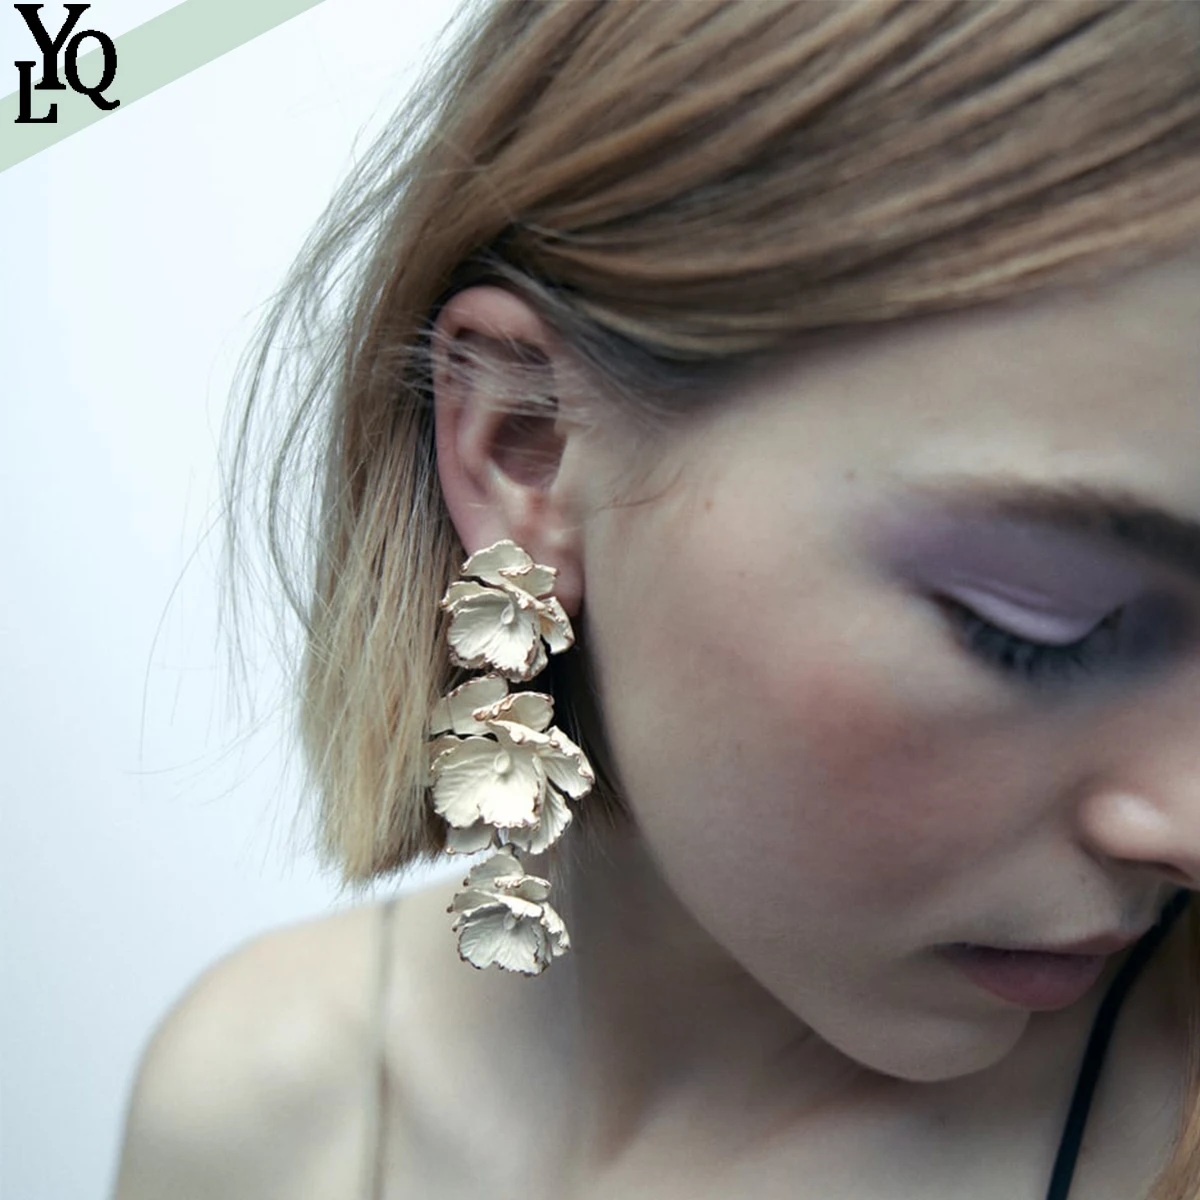 

Bohemia Za Alloy Enameled Flower Earrings for Women Romantic Charm Long Floral Swing Earrings Party Hanging Ear Jewelry Gifts